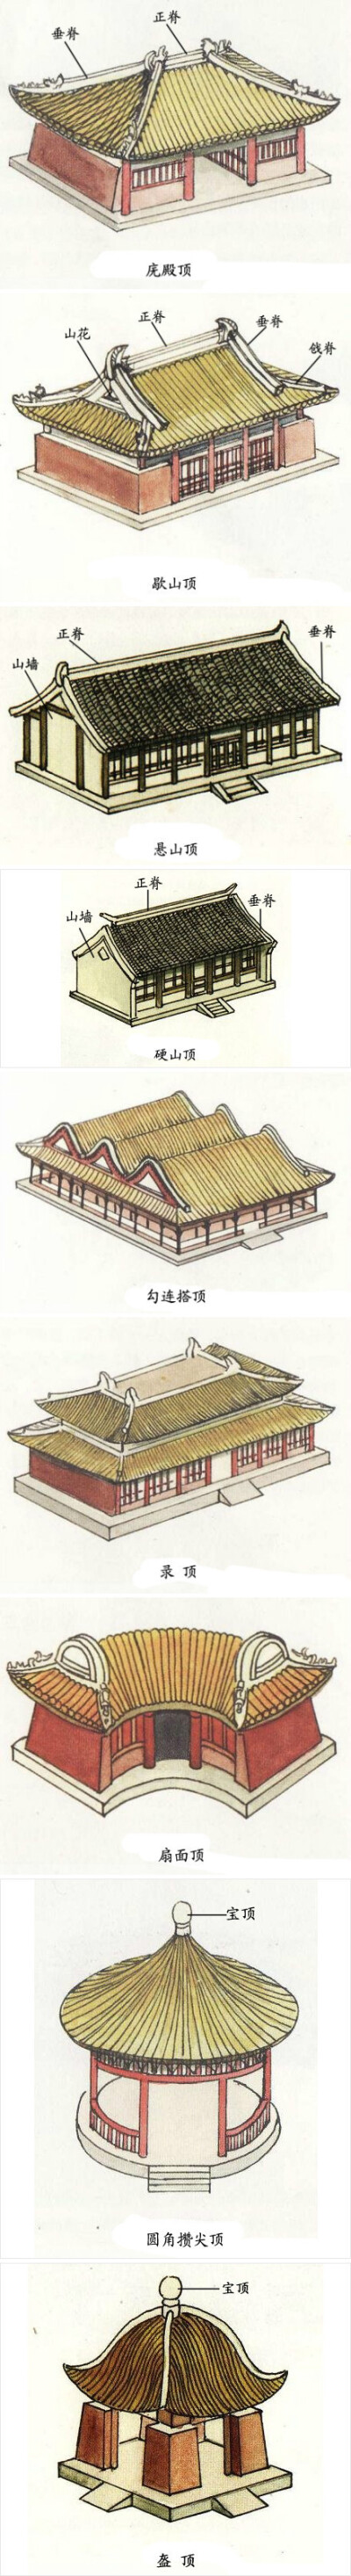 中国古建筑的屋顶形式图片